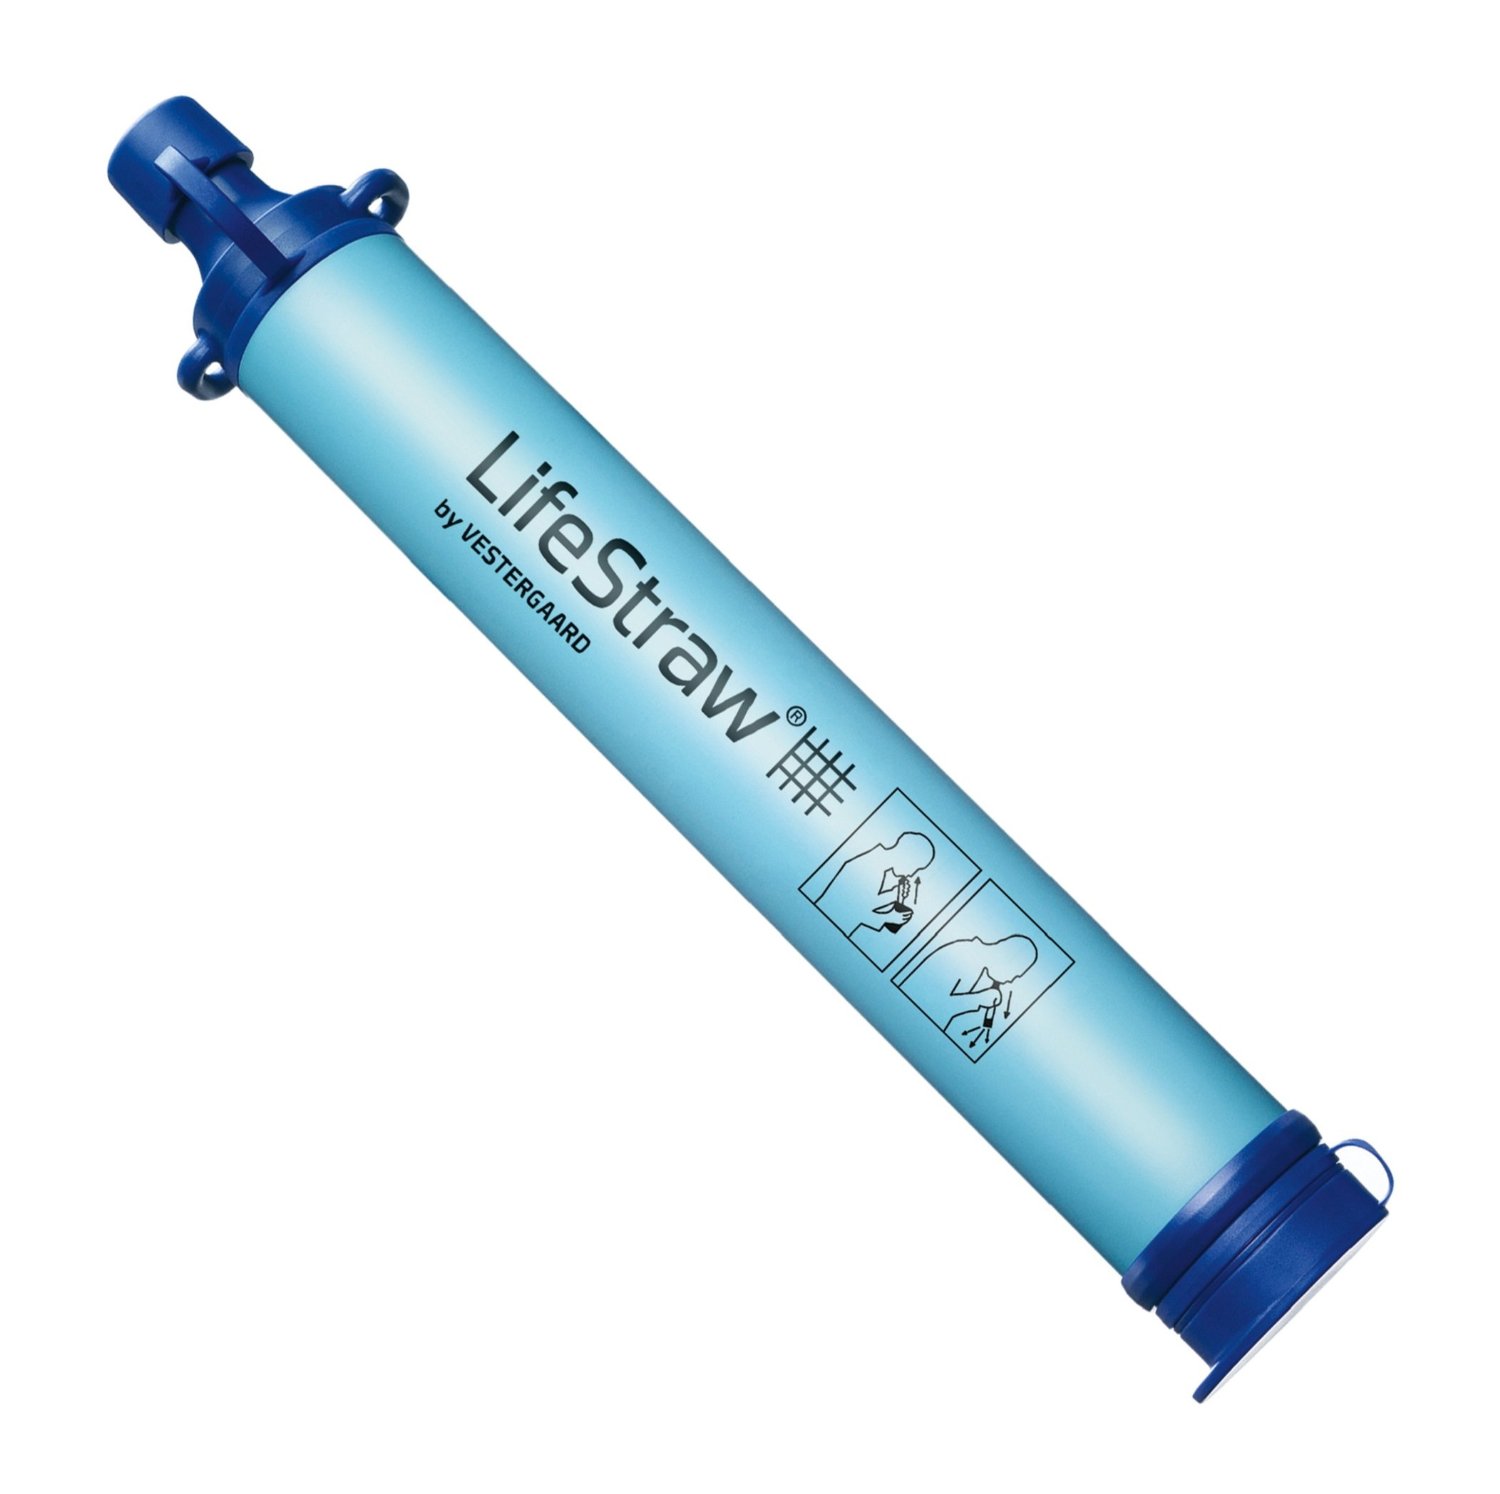 Lifestraw Personal portable filtre à eau filtres jusqu'à 1,000 Gal bisphenol A Free